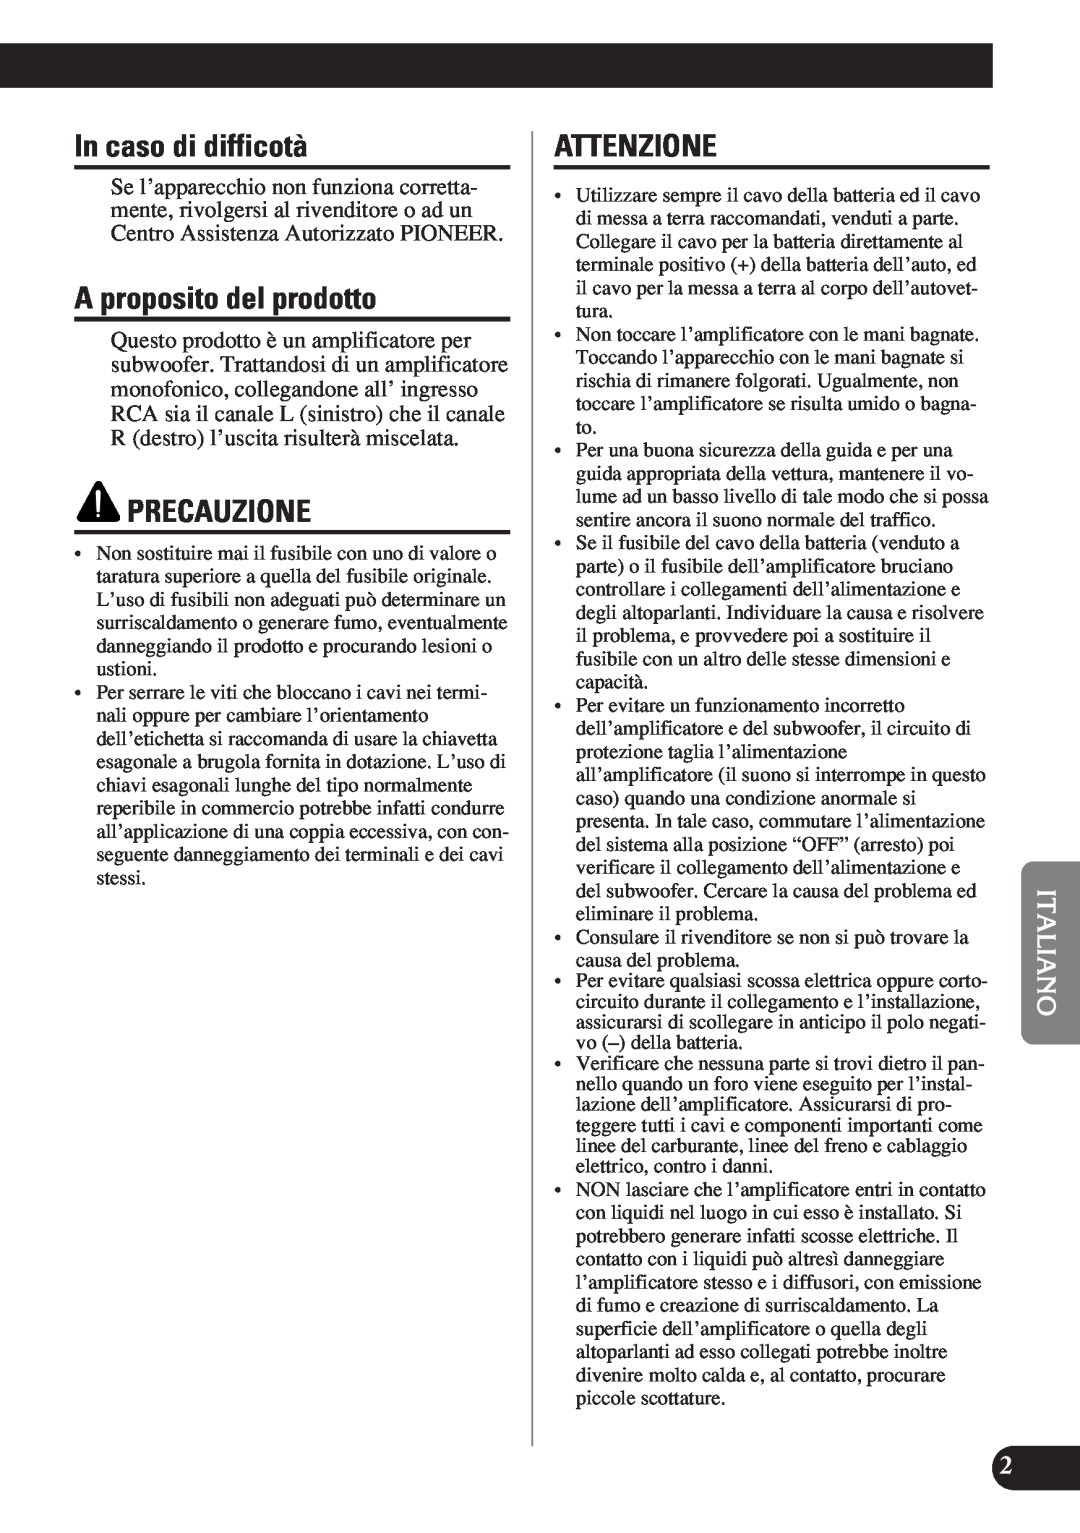 Pioneer D1200SPL owner manual In caso di difficotà, A proposito del prodotto, Precauzione, Attenzione 